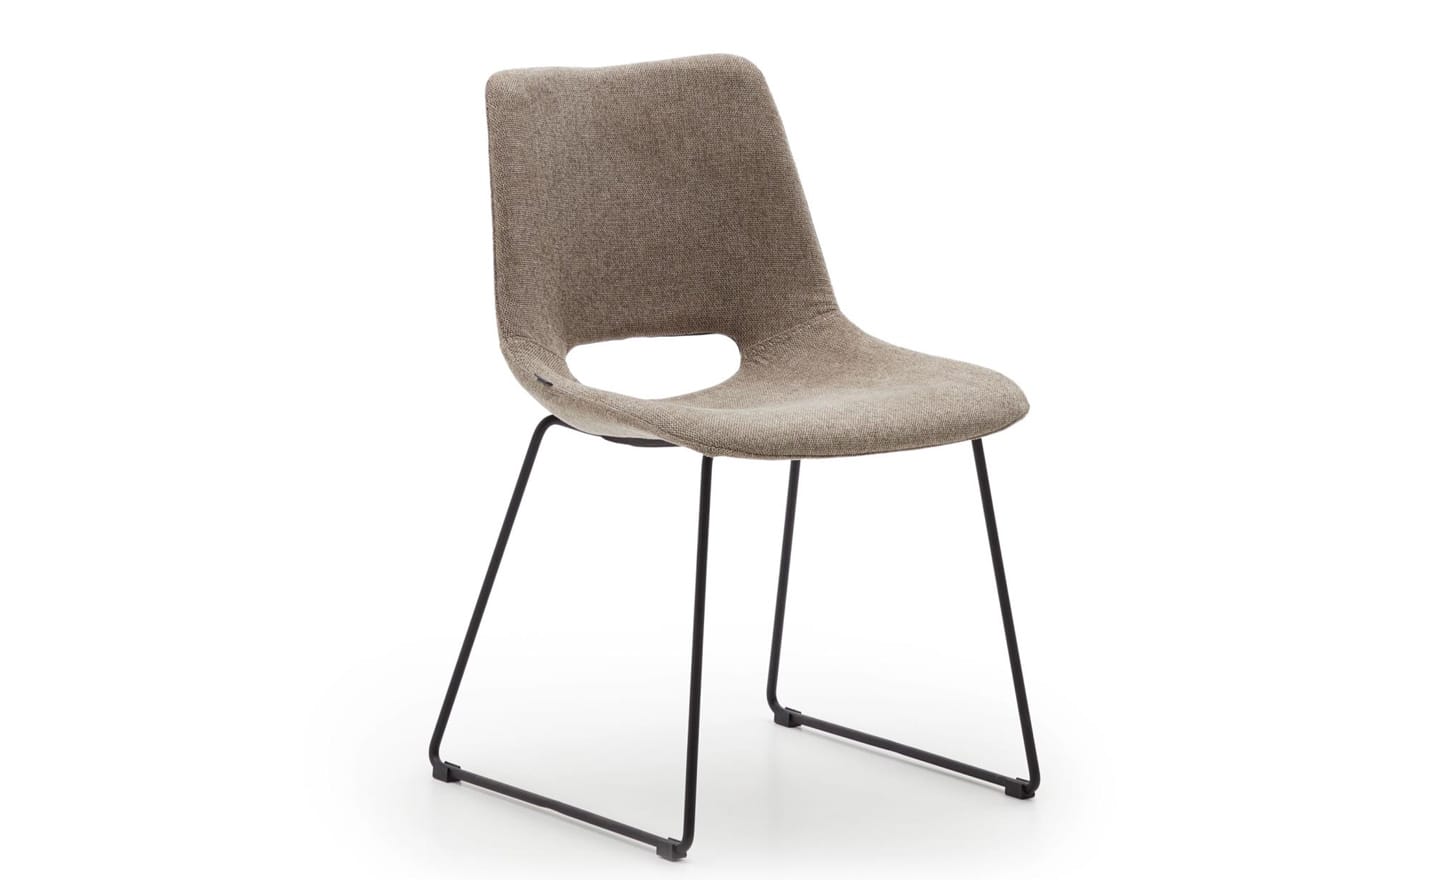 Cadeira Zahara Castanho, estofada cor castanho, pernas de aço preto, design moderno figura curvada, proteções de plástico nas pernas.